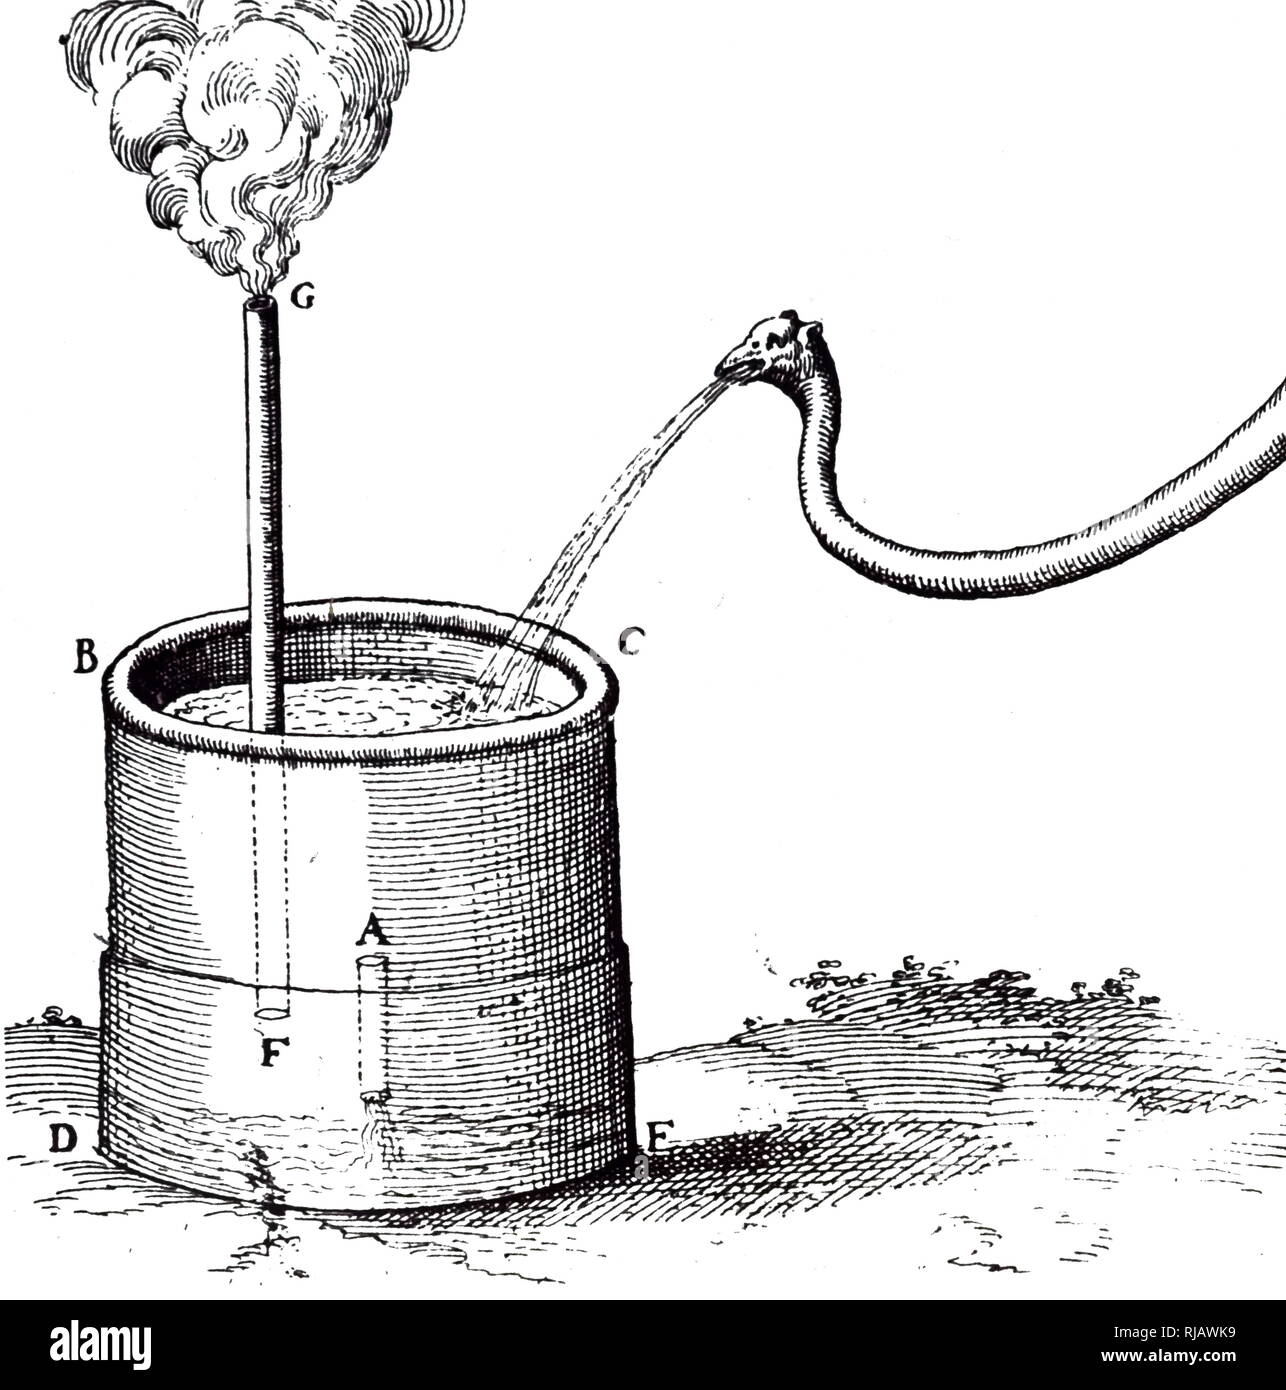 Expérience pour déterminer le poids de l'eau et le processus d'évaporation. Illustration de Fludd's 'Utriusque Cosmi Maioris', 1617-1621. Robert Fludd, également connu sous le nom de Robertus de Fluctibus (1574 - 1637), était un éminent médecin anglais Paracelsian avec tant scientifique que des intérêts occultes. Banque D'Images